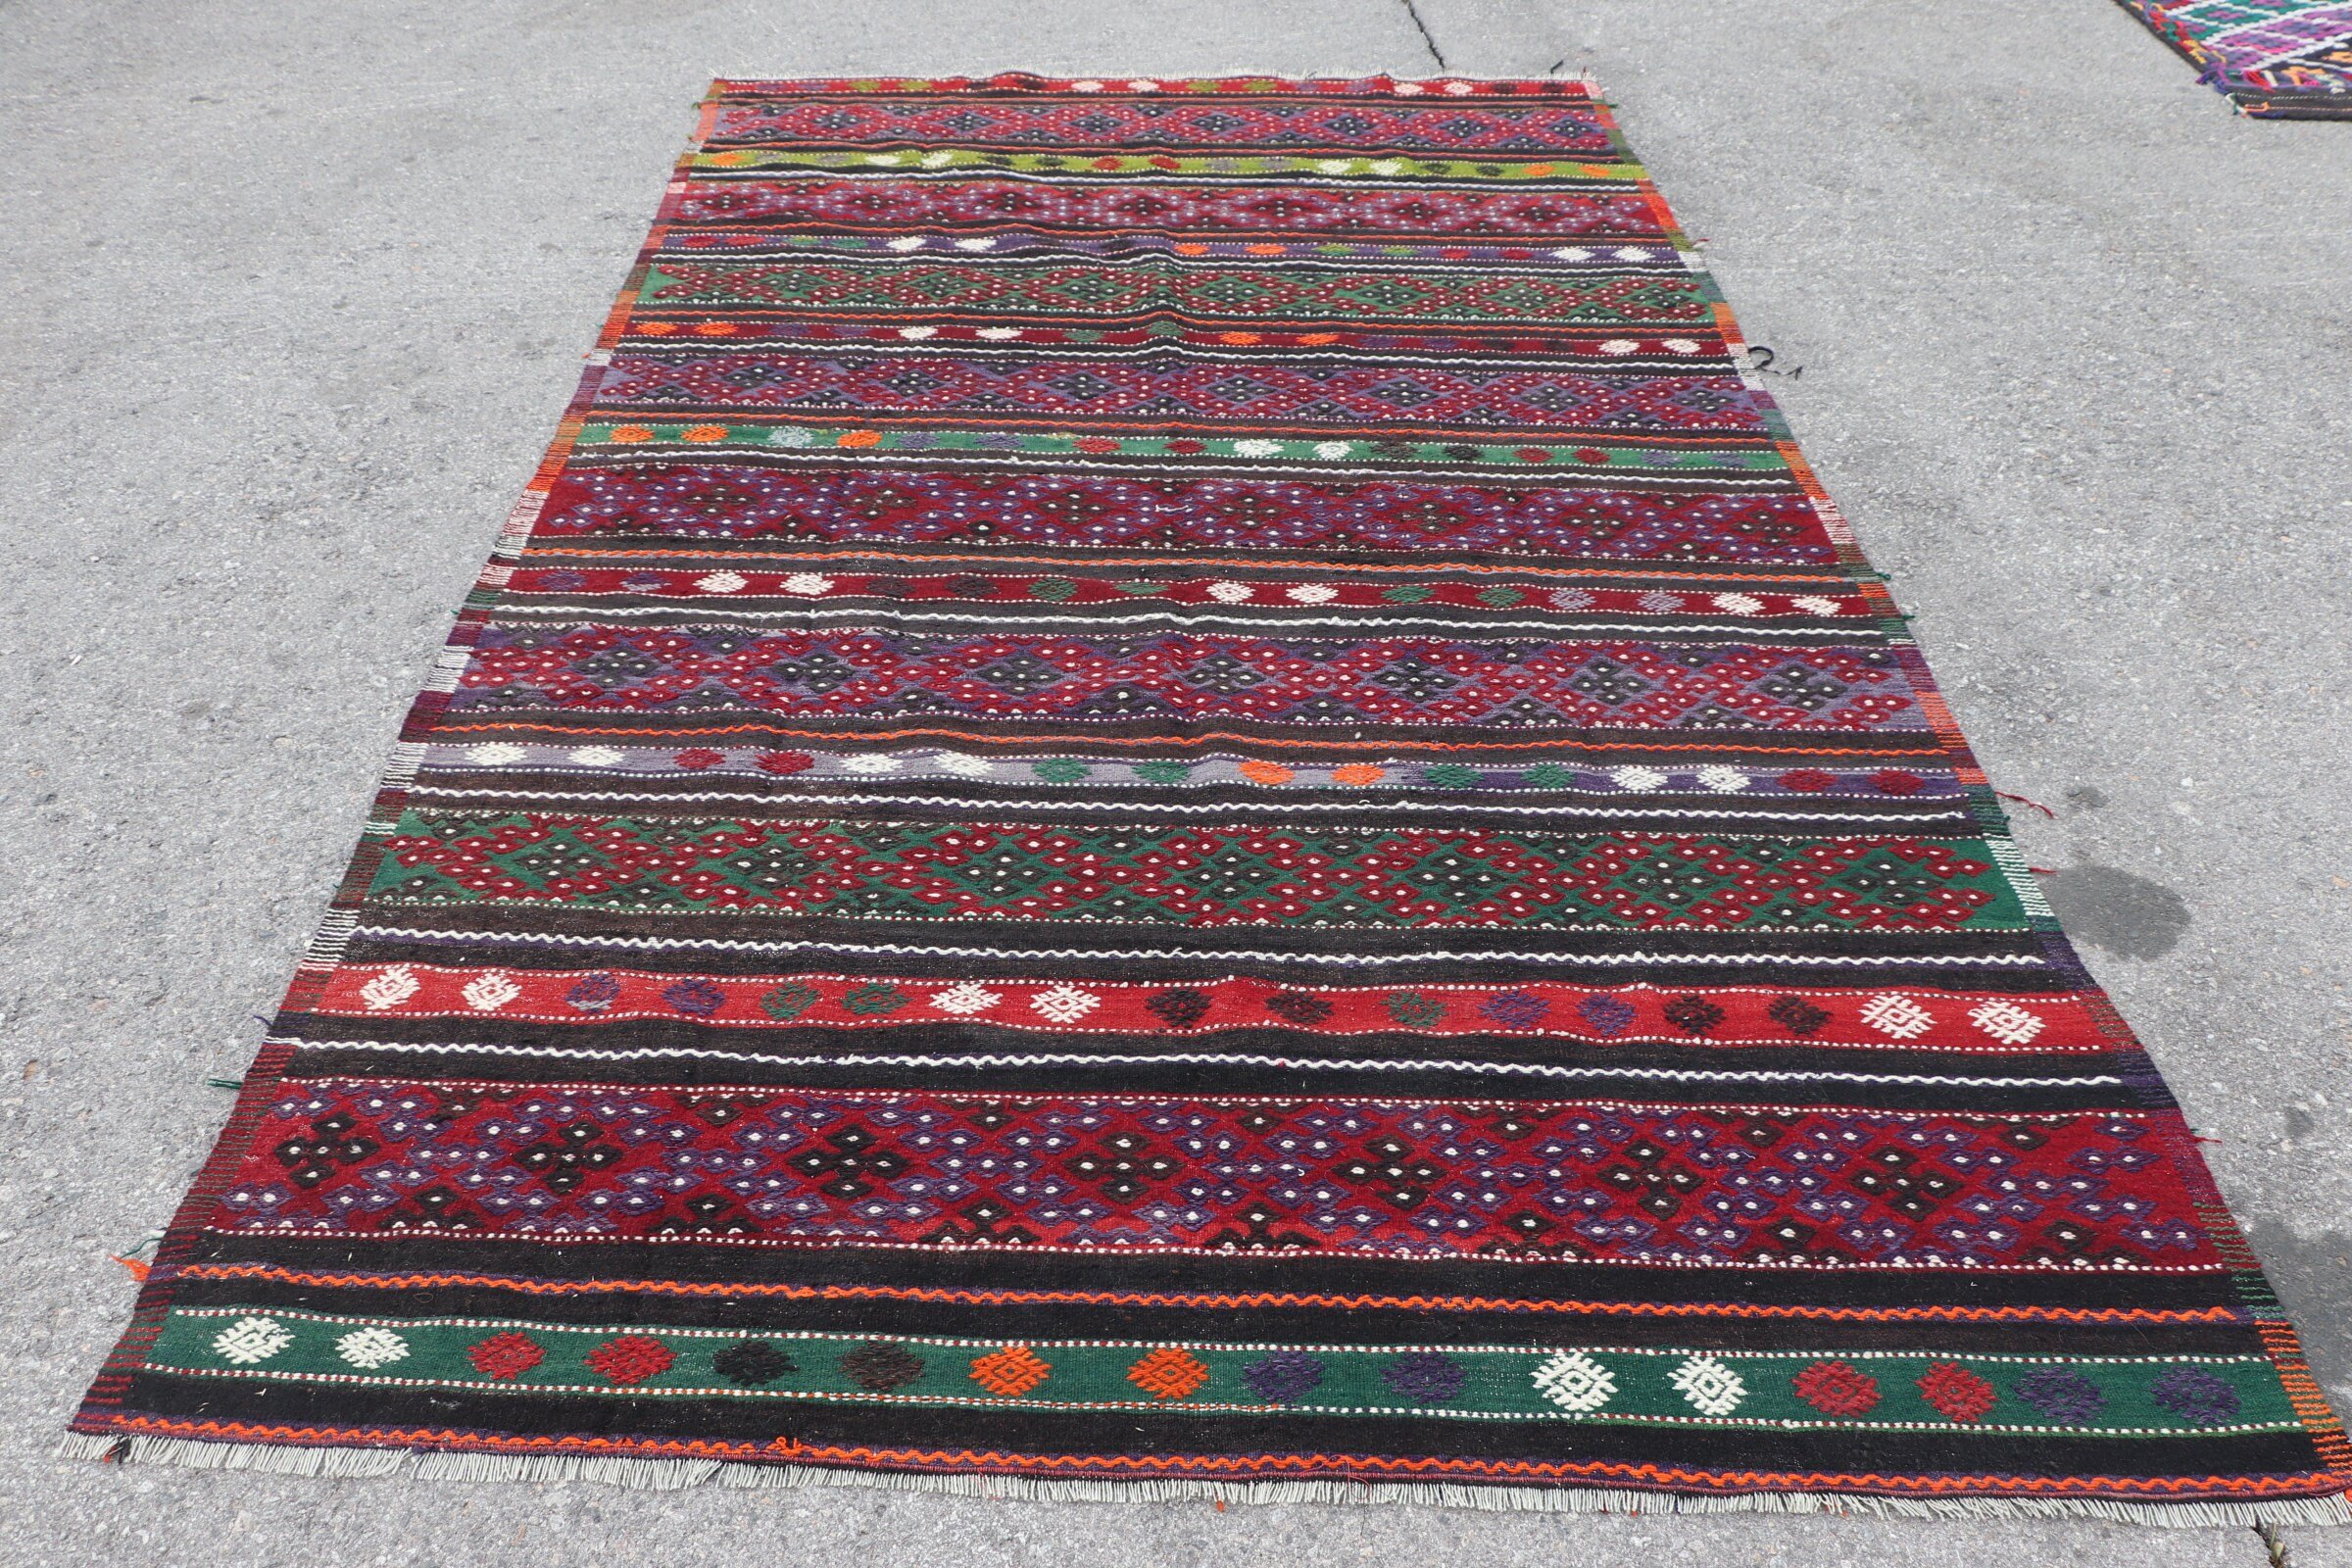 Decorative Rugs, Anatolian Rug, Living Room Rug, Vintage Rug, Floor Rug, Turkish Rug, 6x10.5 ft Large Rug, Kilim, Red Wool Rug, Salon Rugs